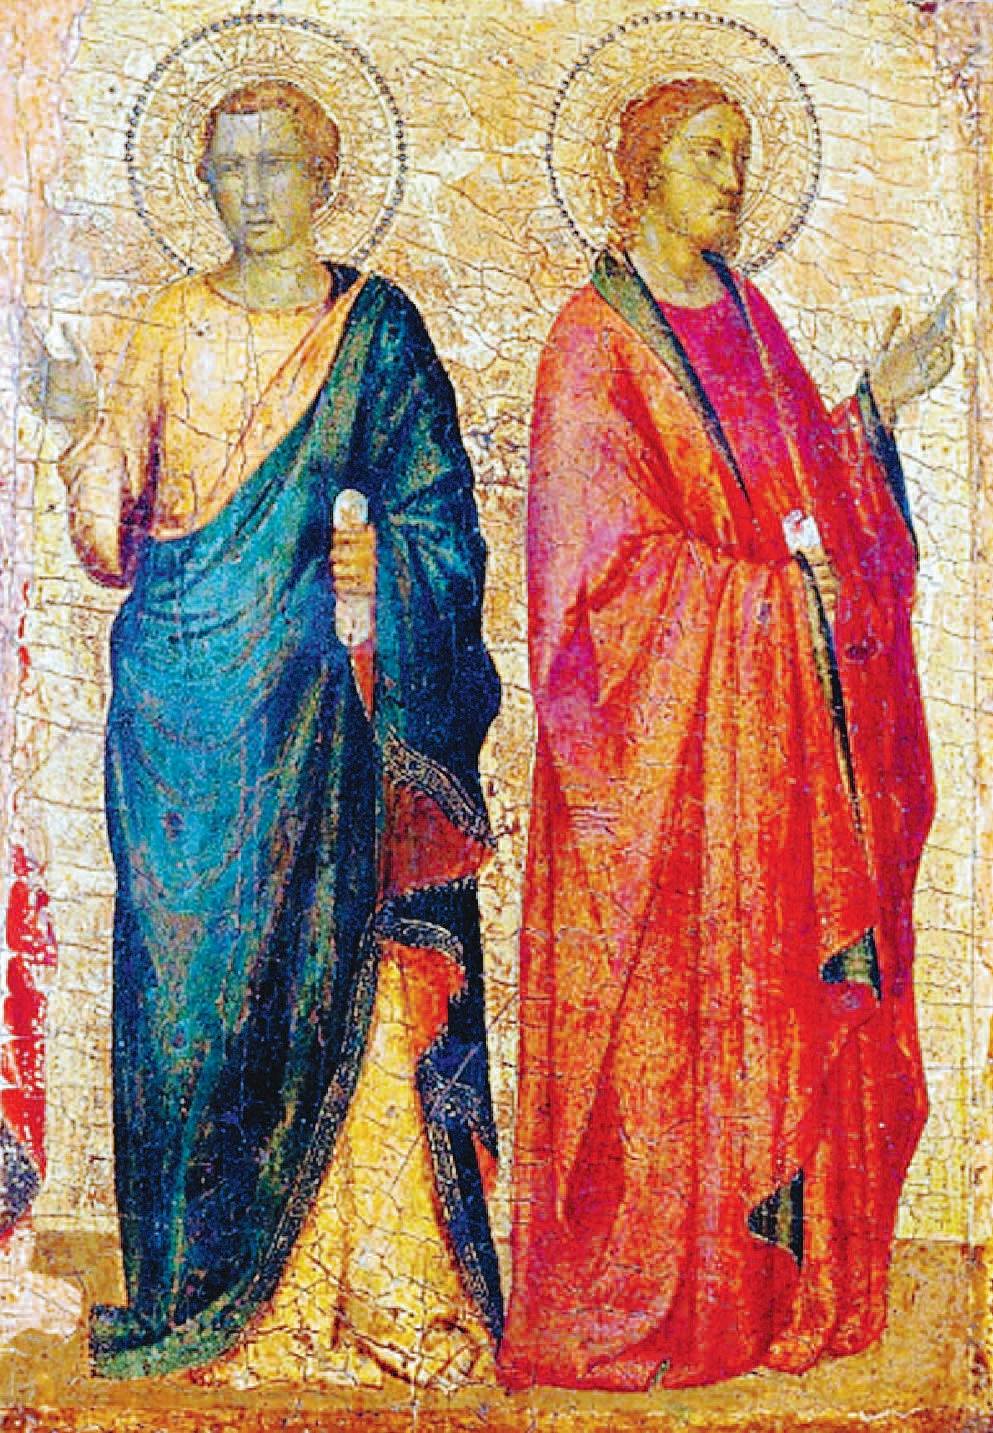 Giotto & Co: ecco gli artisti che illuminano il Trecento